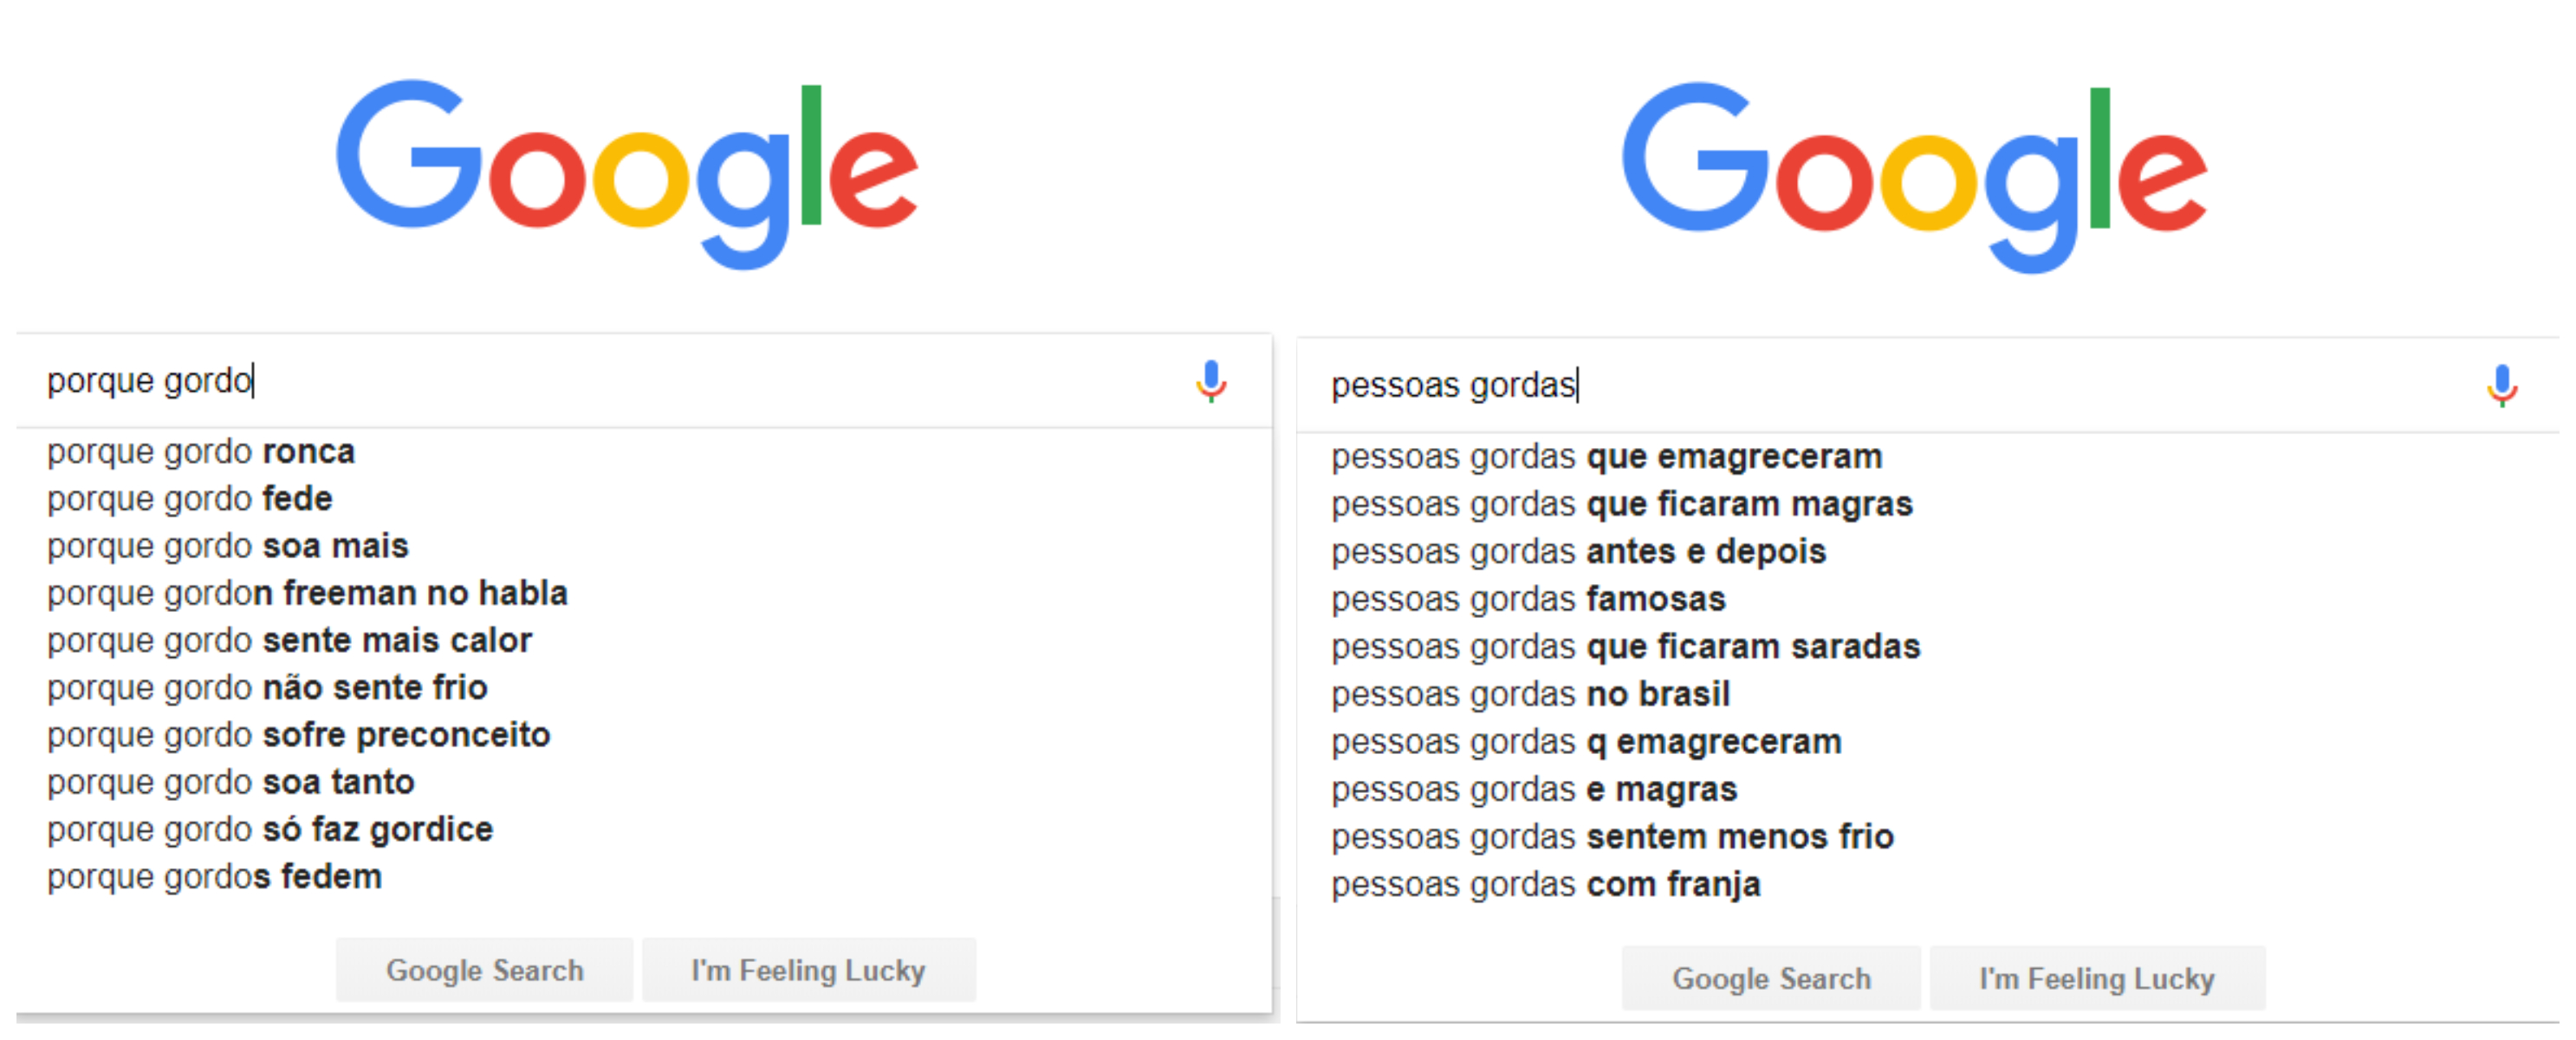 Gordofobia x Pressão estética: Sugestões de buscas no Google para "por que gordo" e "pessoas gordas"